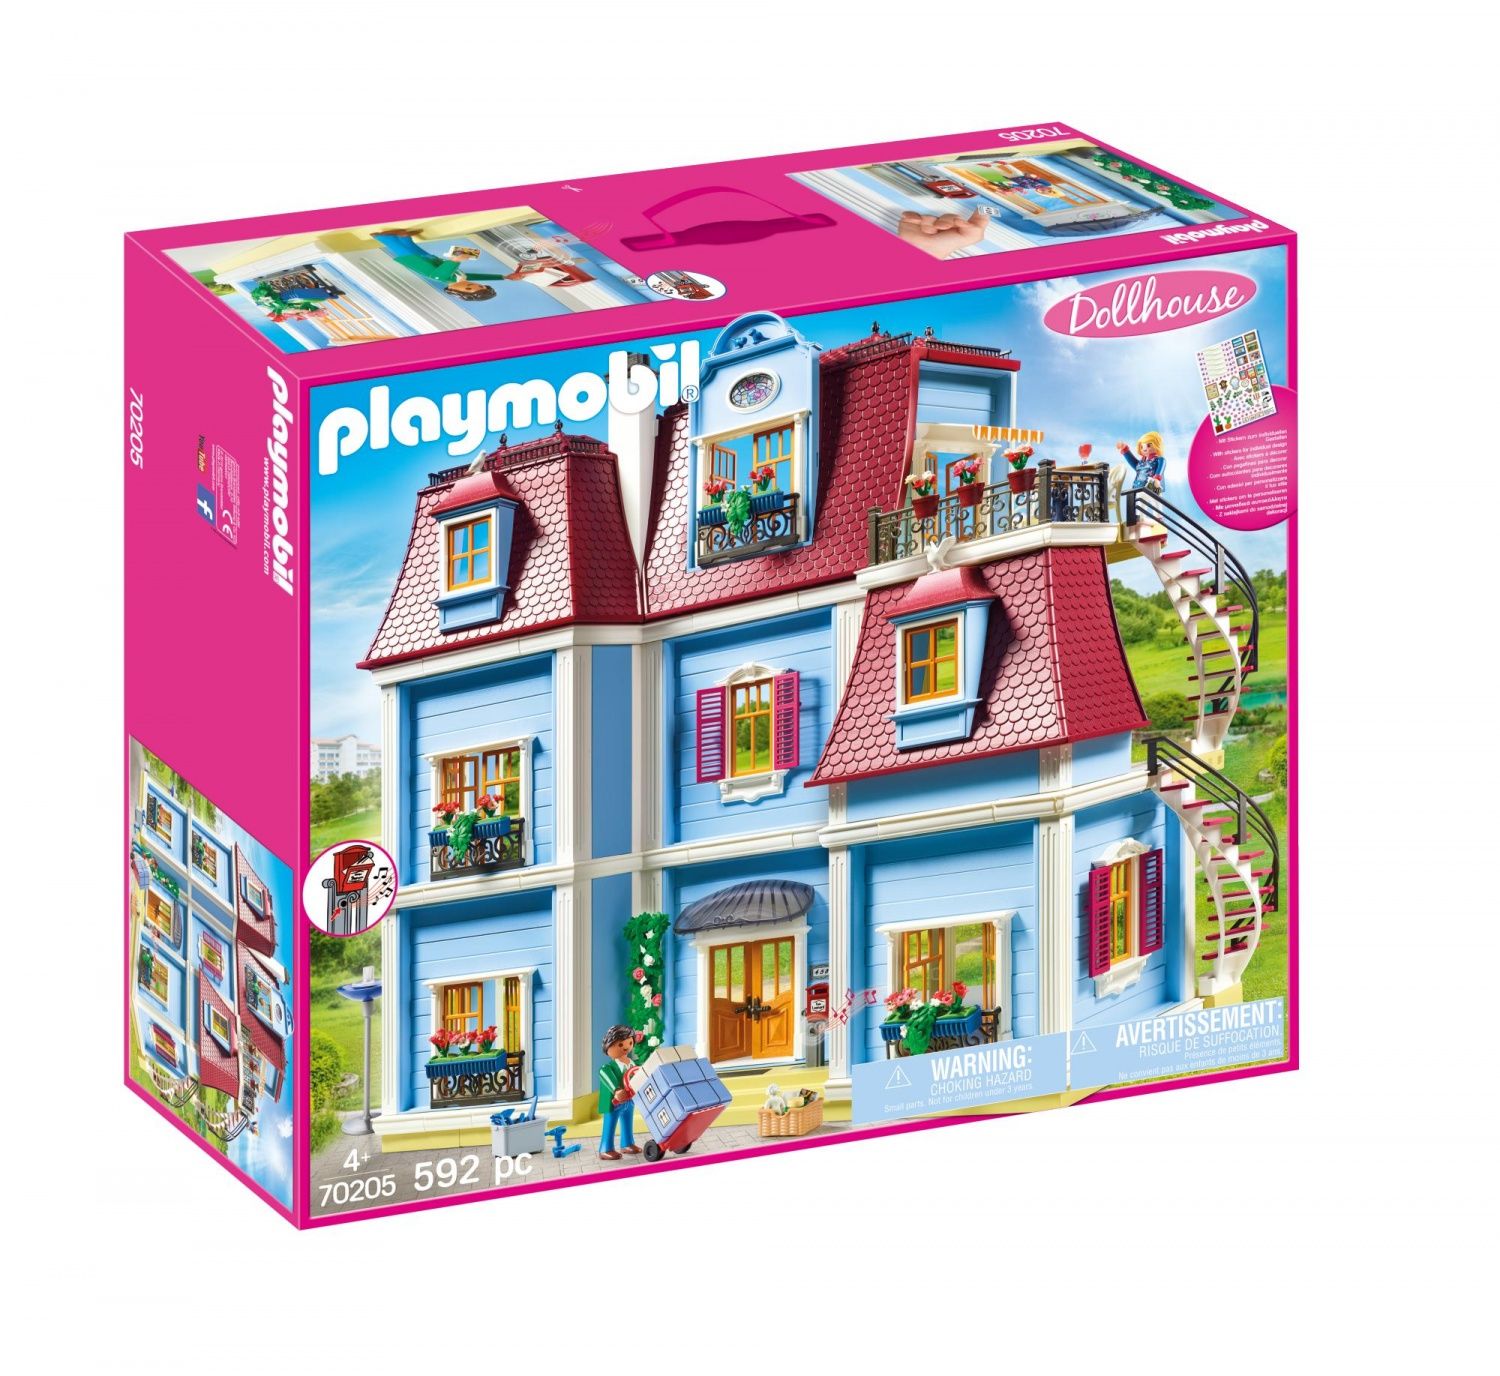 Playmobil 70212 - dollhouse la maison traditionnelle - aménagement pour  fete - La Poste